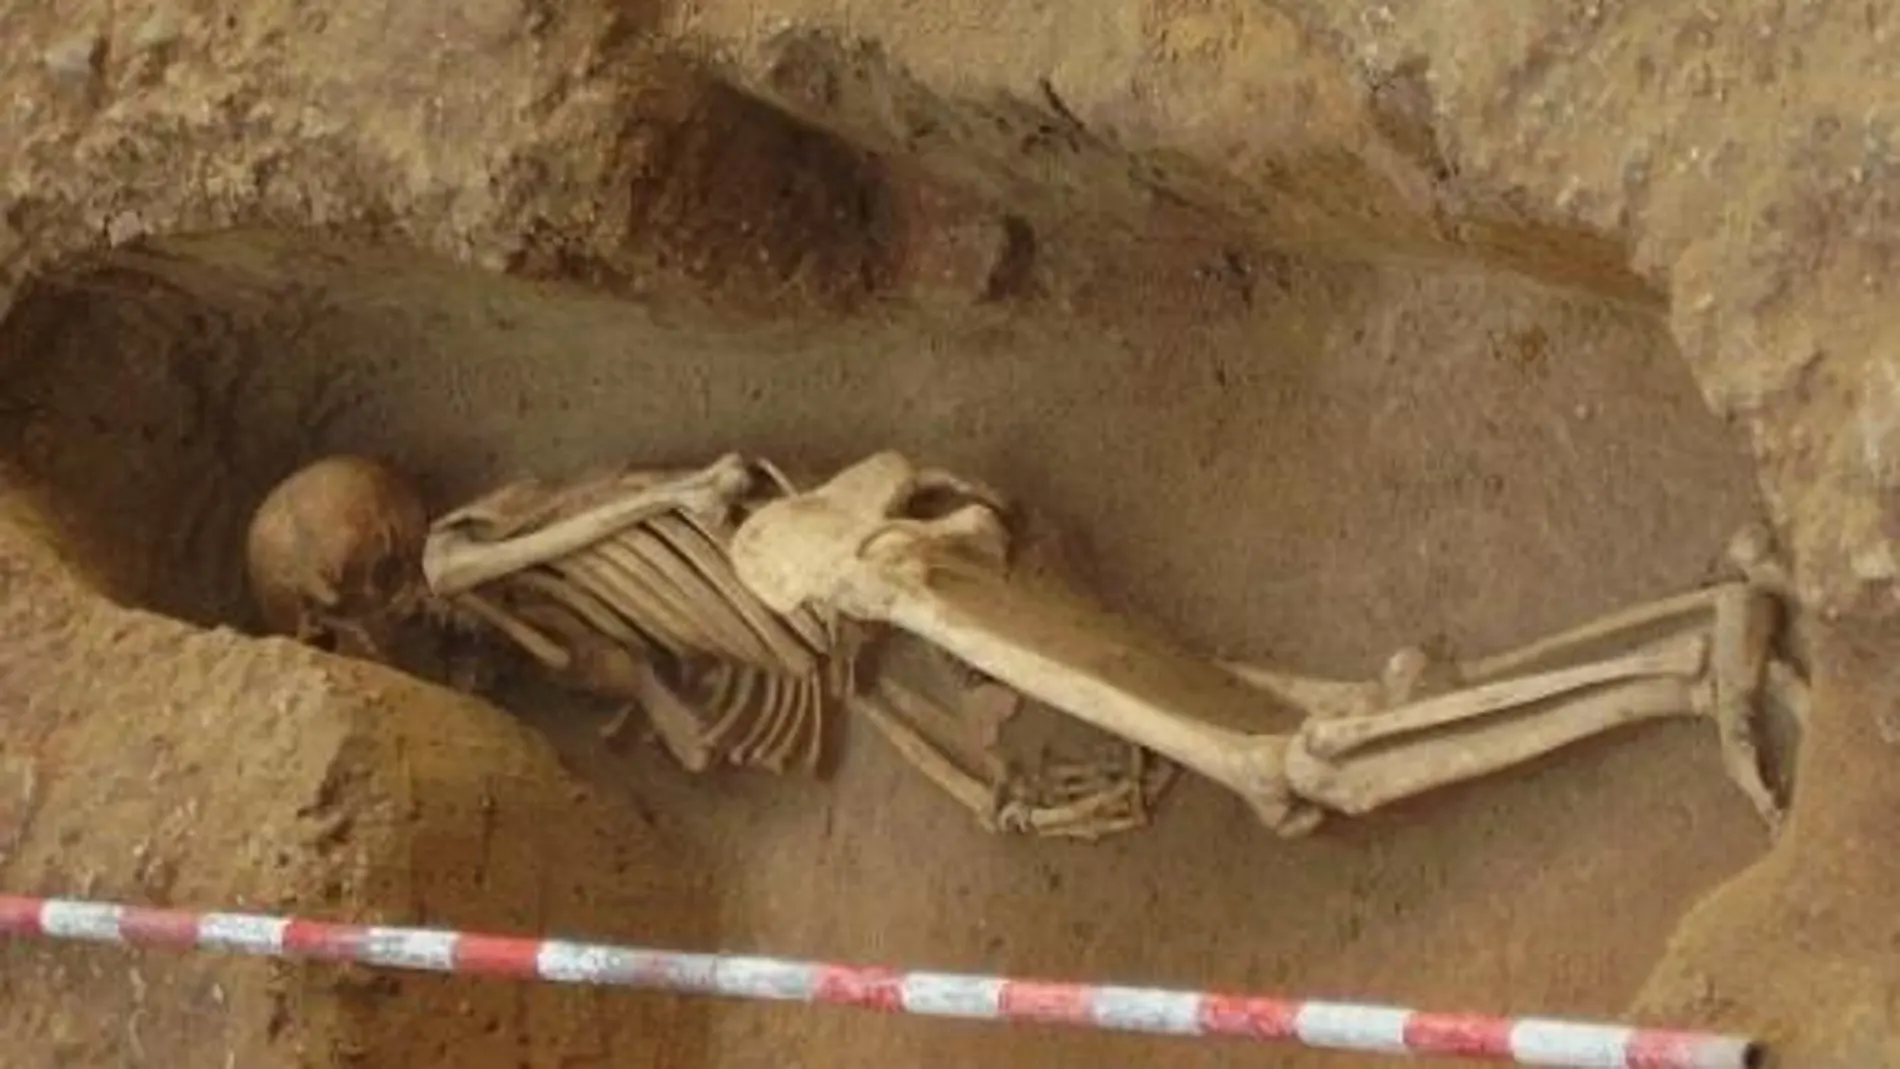 CA01. CÁDIZ, 25/04/2023.- Imagen de parte de los restos humanos hallados en distintas excavaciones de Cádiz, que ahora los científicos han confirmado a través de análisis de ADN que eran fenicios procedentes o descendientes de individuos de Francia. EFE/Unidad de Cultura Científica de la UCM - SOLO USO EDITORIAL/SOLO DISPONIBLE PARA ILUSTRAR LA NOTICIA QUE ACOMPAÑA (CRÉDITO OBLIGATORIO) - 